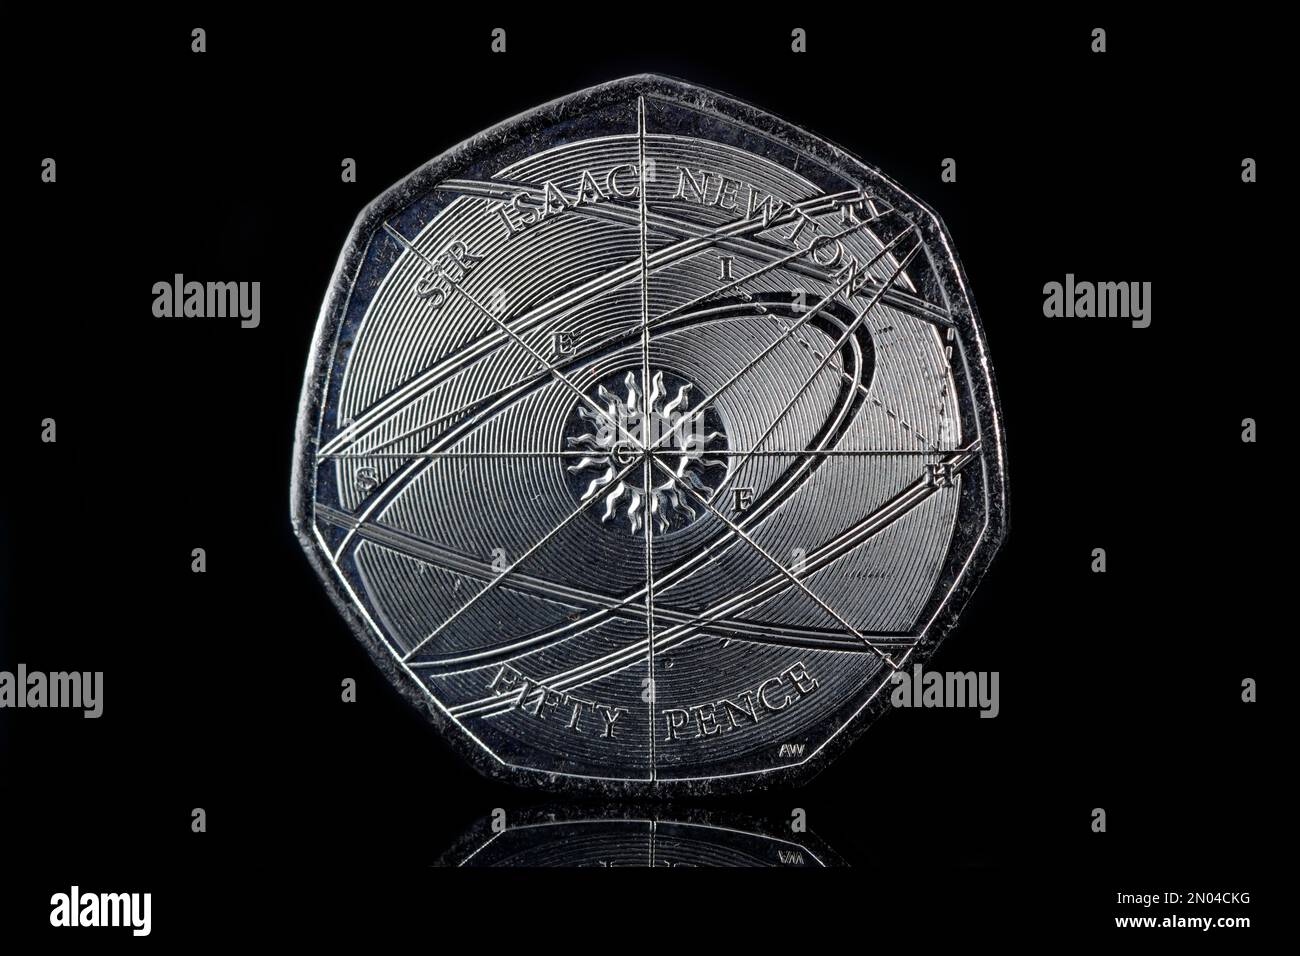 Eine 50p-Euro-Münze wurde ausgegeben, um den Errungenschaften von Sir Isaac Newton und seinem Vermächtnis zu gedenken. Ausgestellt im Jahr 2017 Stockfoto